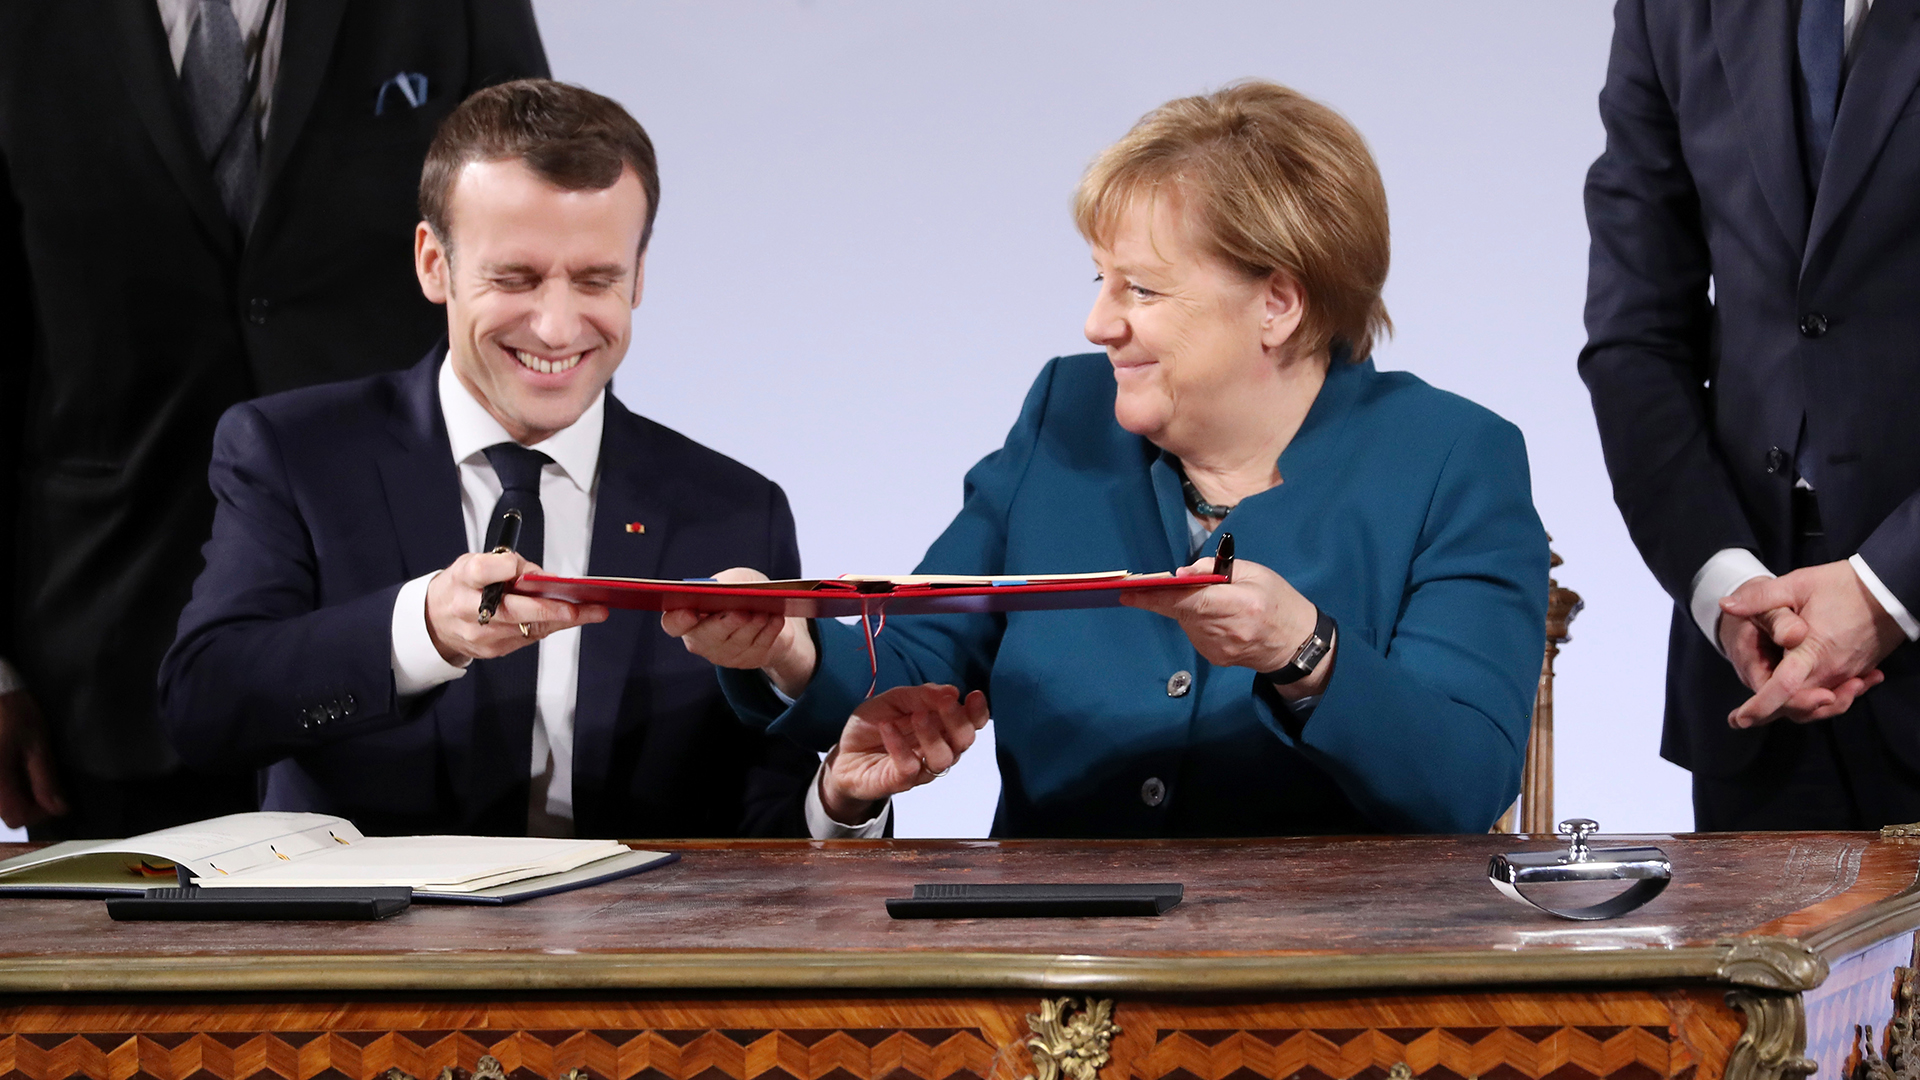  Emmanuel Macron und Angela Merkel unterzeichnen Aachener Vertrag | FRIEDEMANN VOGEL/EPA-EFE/REX